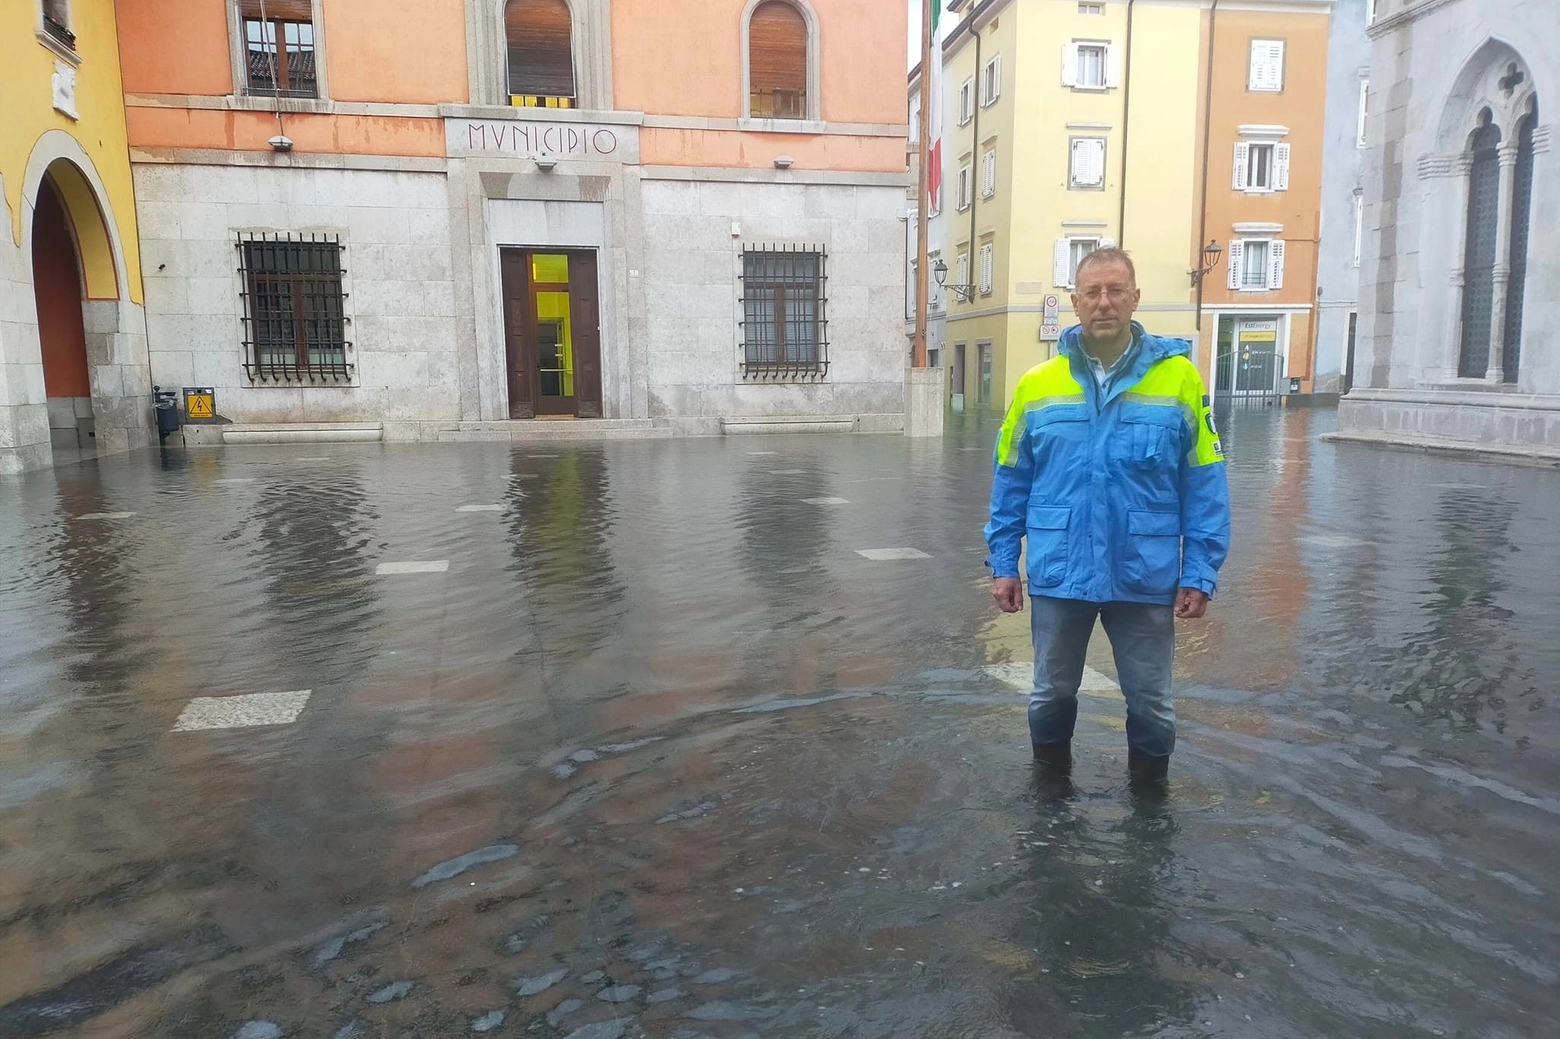 Il centro storico di Muggia allagato, il sindaco Paolo Polidori aggiorna sulla situazione via Fabcebook